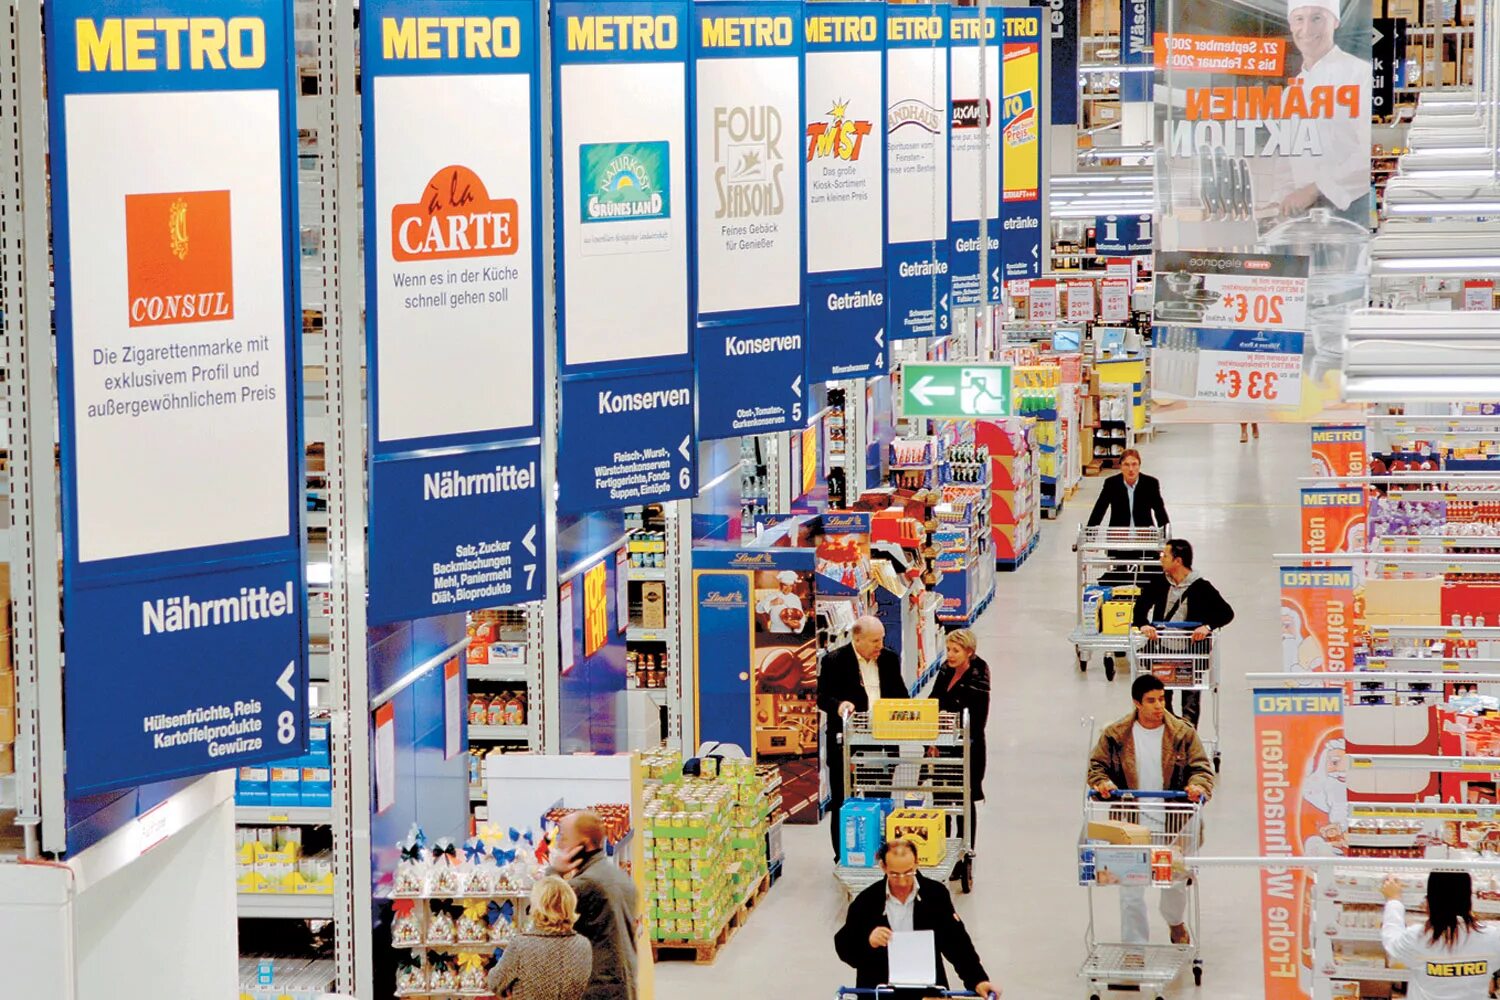 Сайт метро. Метро магазин реклама. Метро гипермаркет реклама. Реклама Metro Cash carry. Metro интернет магазин.